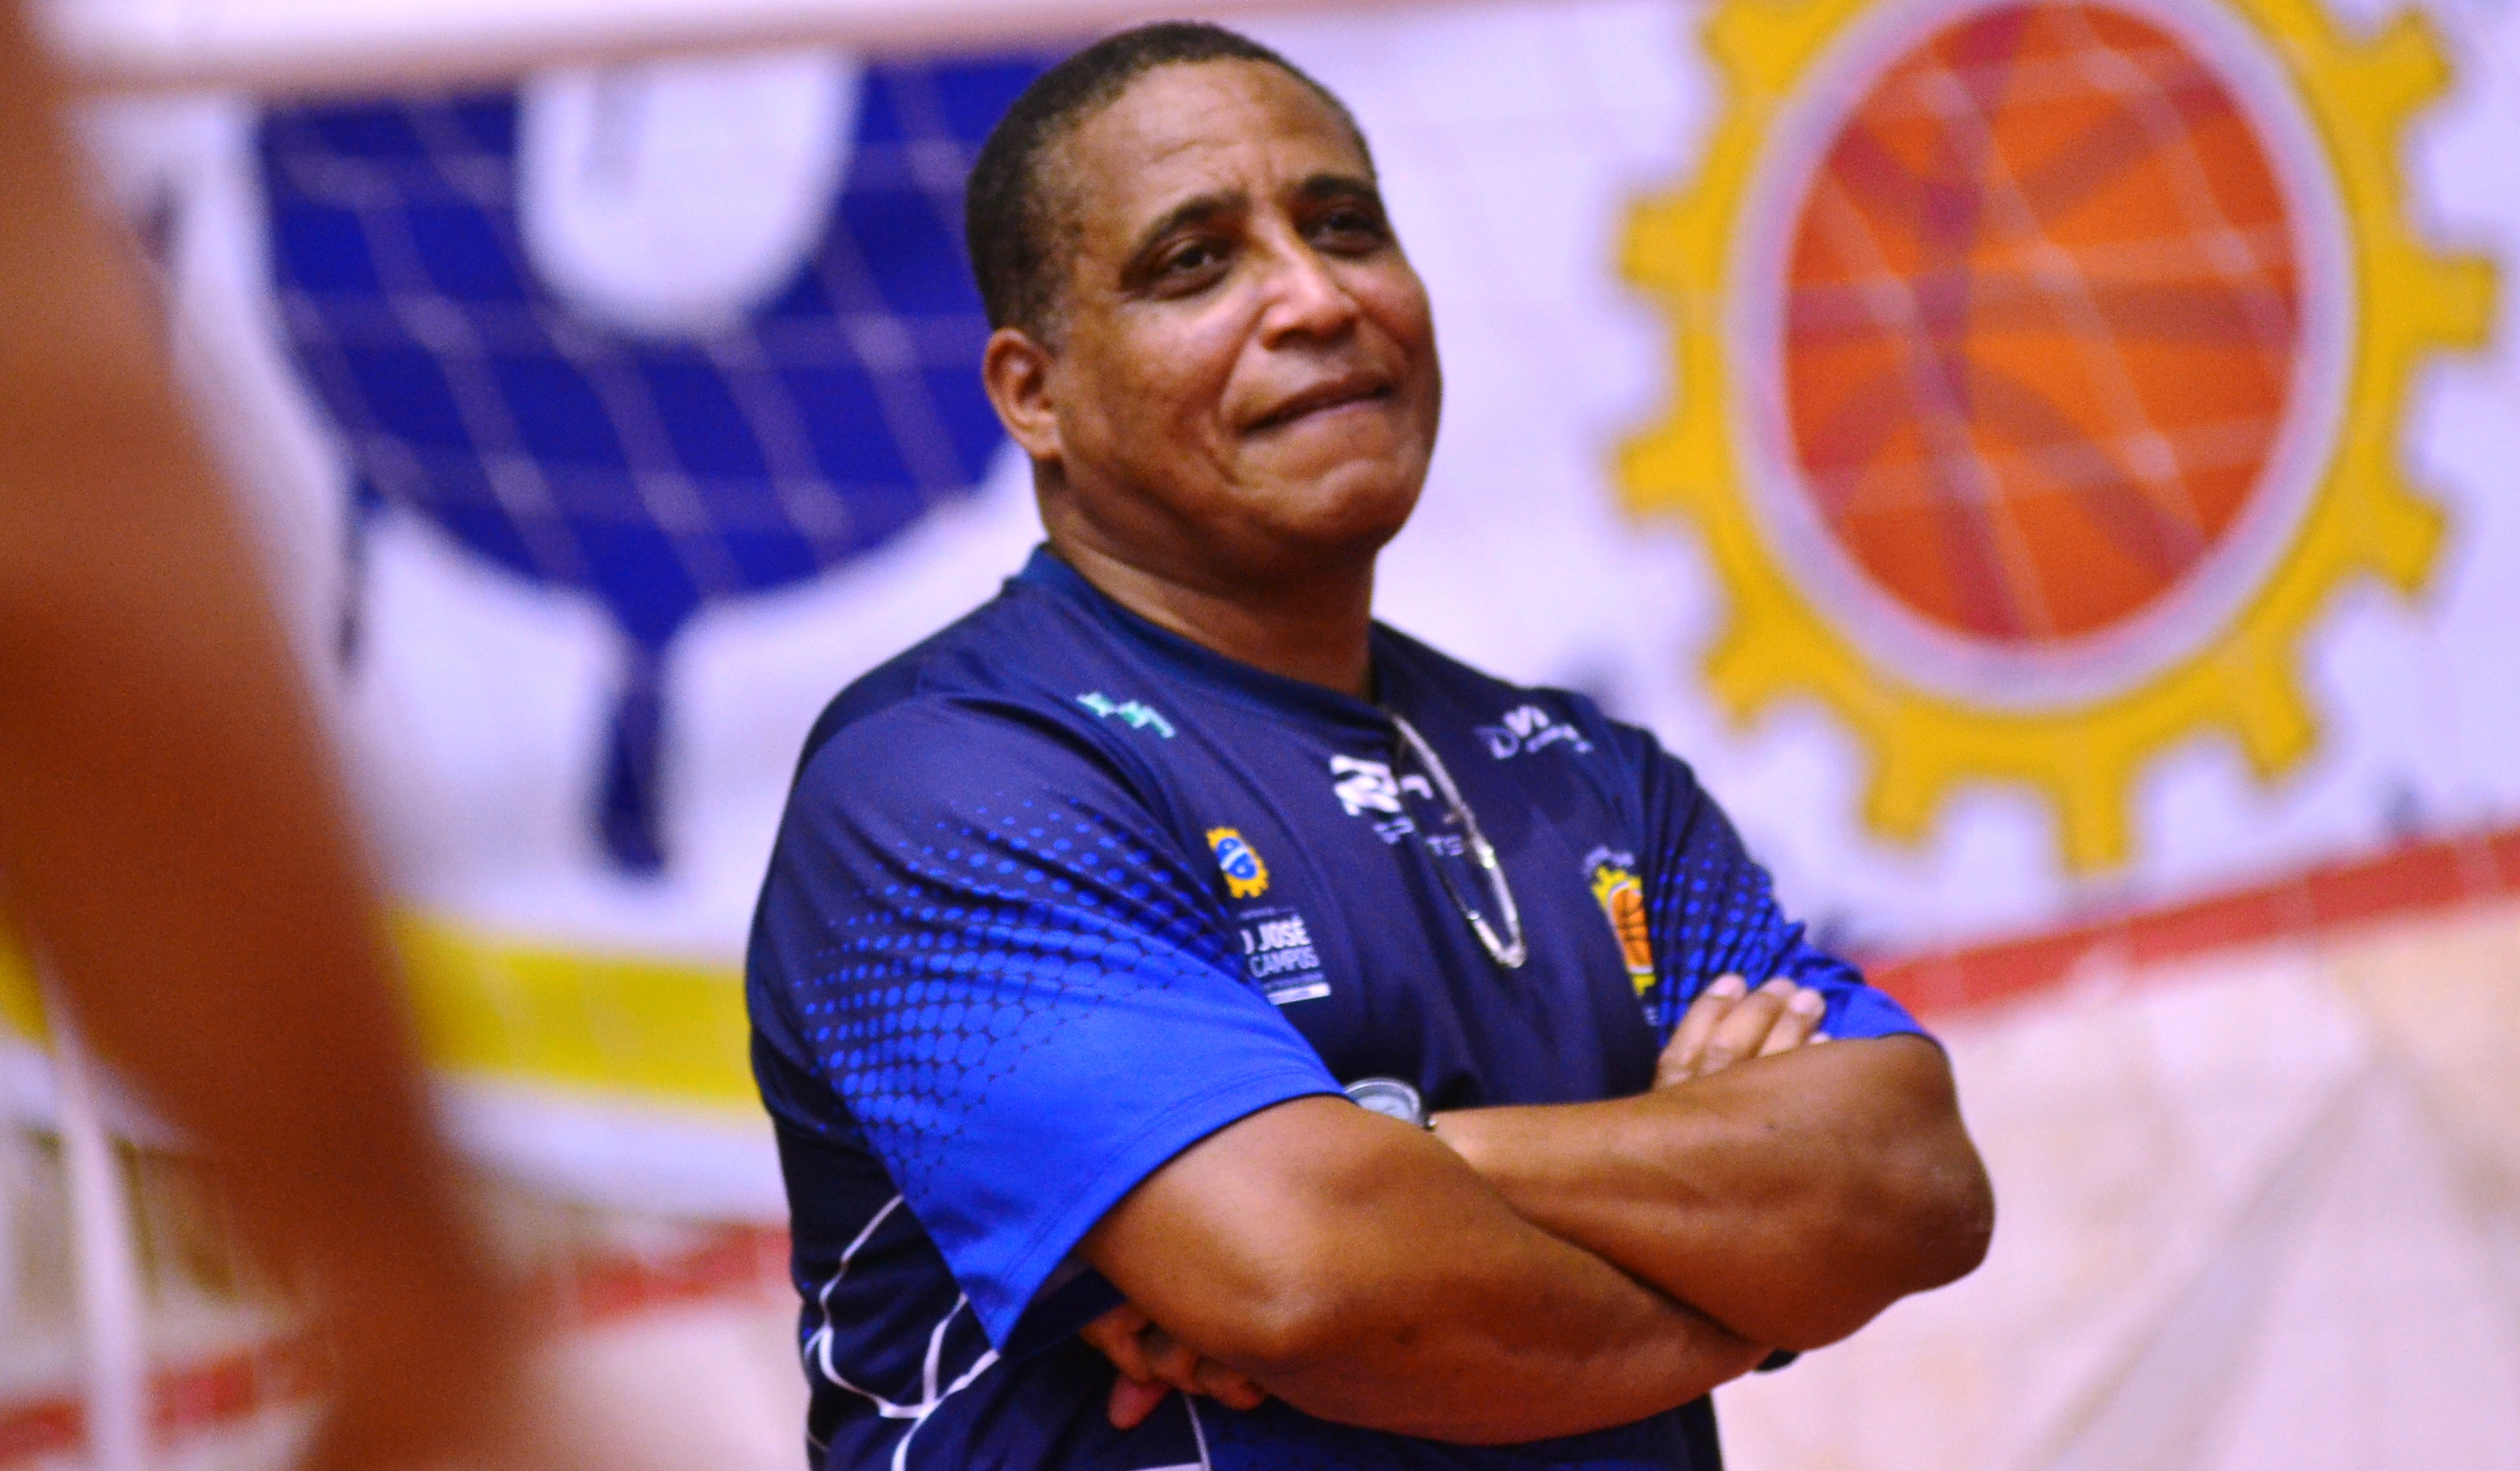 Até novo treinador ser definido, auxiliar Marcos Lima comandará a equipe (Antonio Basilio/PMSJC) 